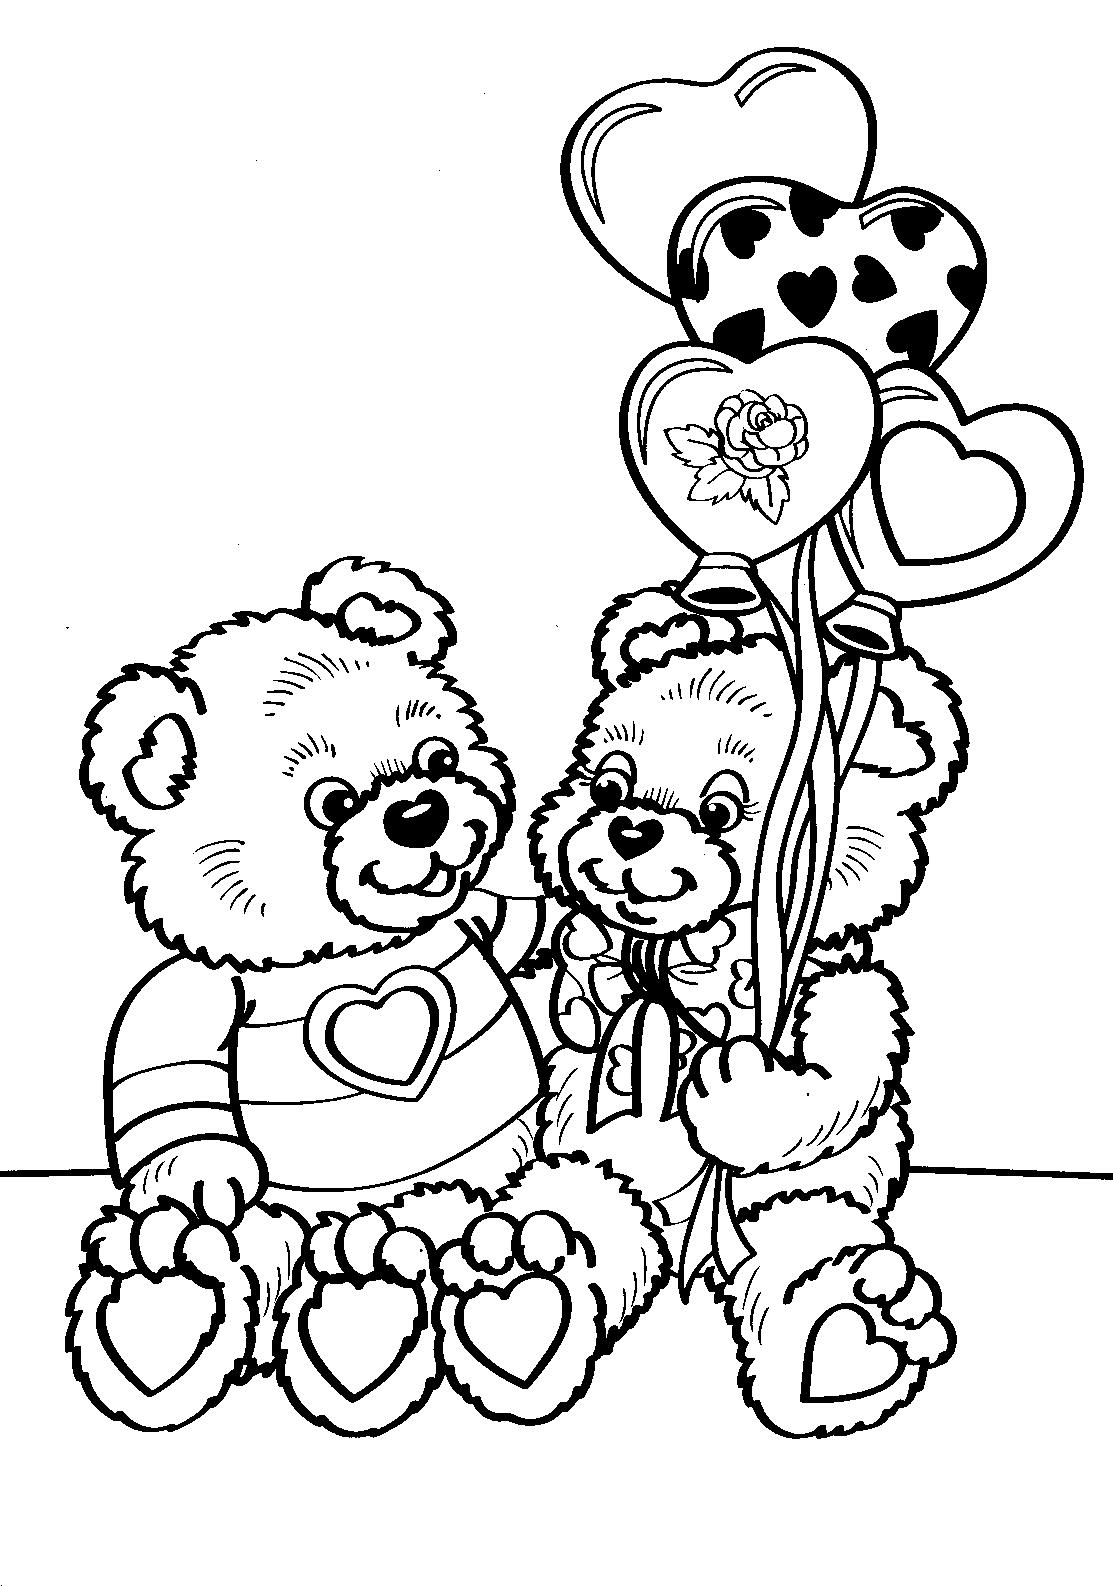 Раскраски с мишками Тедди, милые и красивые раскраски для детей с медвежатами  Раскраска мишки Тедди сидят рядом и воздушные шарики в виде сердца